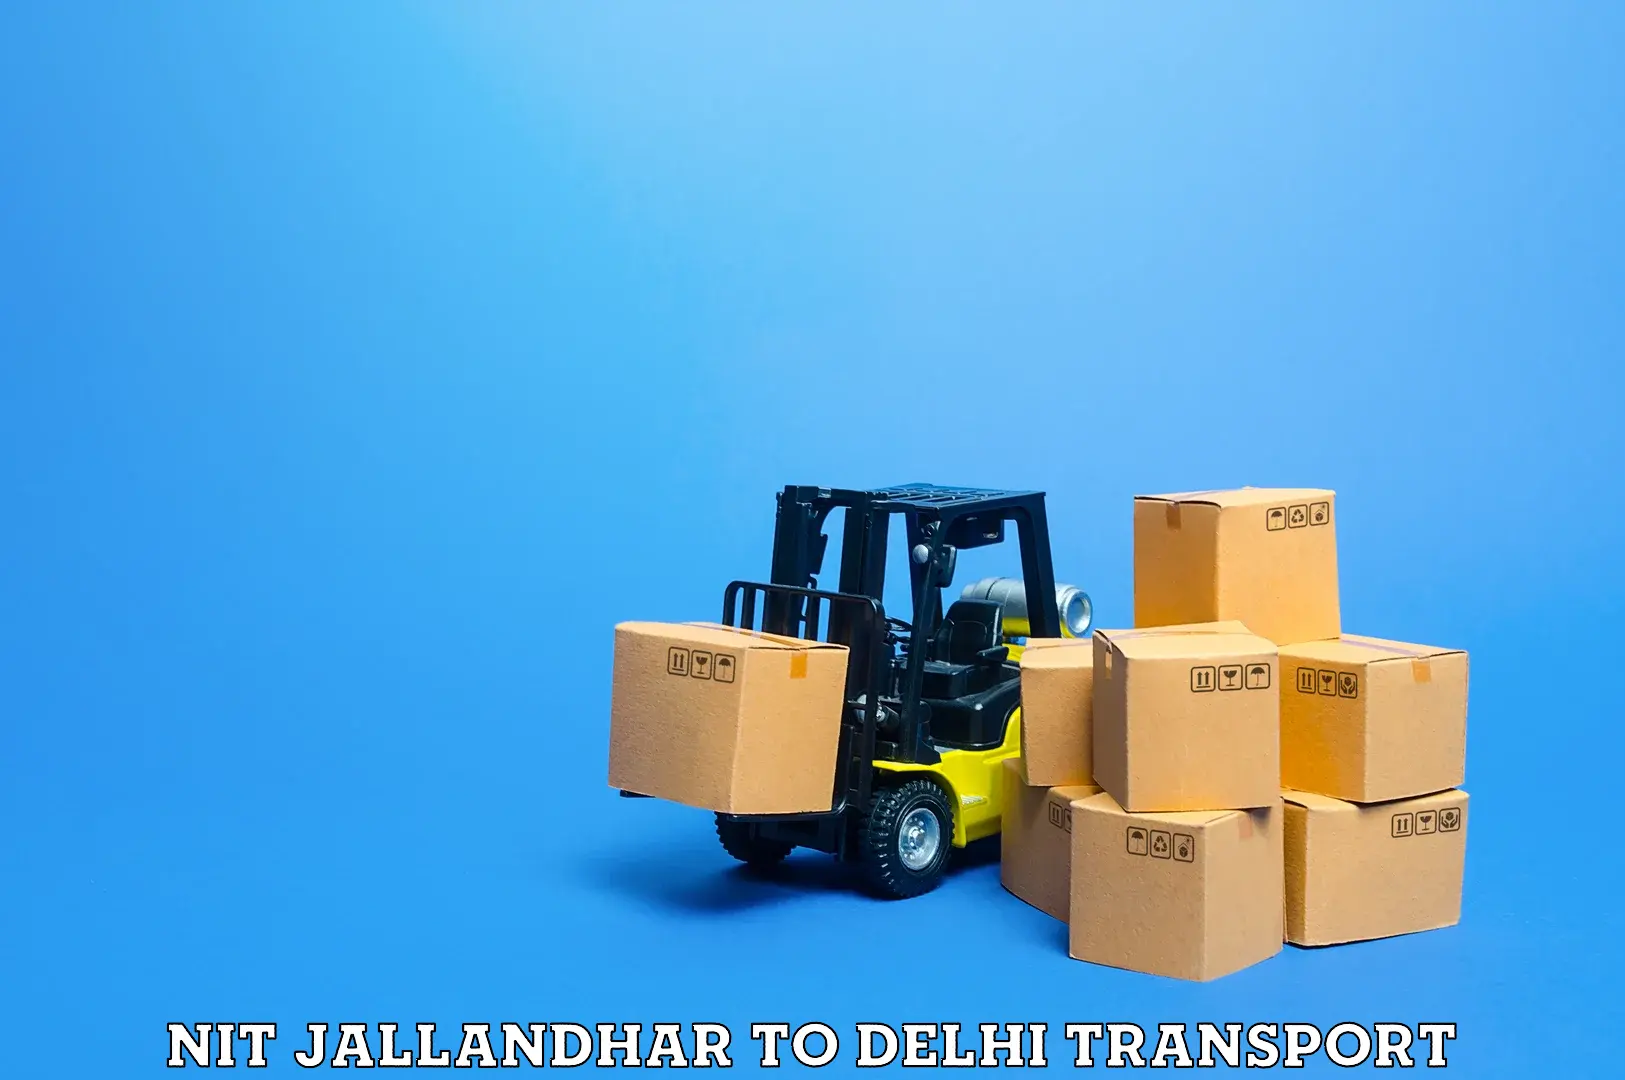 Daily parcel service transport NIT Jallandhar to East Delhi